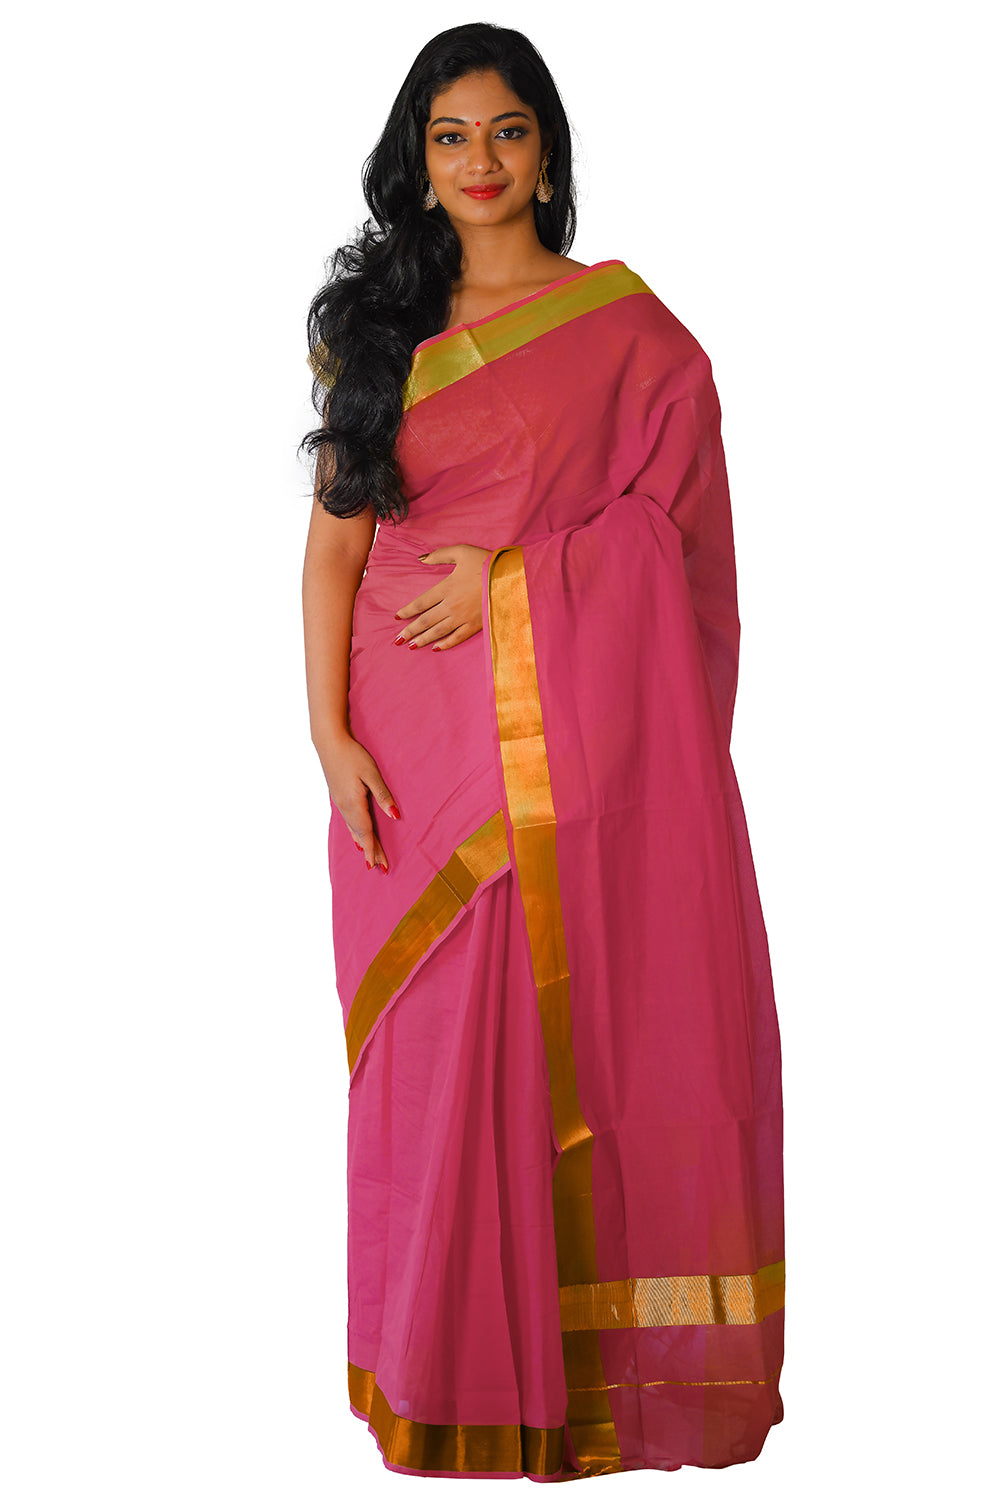 Kerala Traditional Pink Colour Kasavu Saree